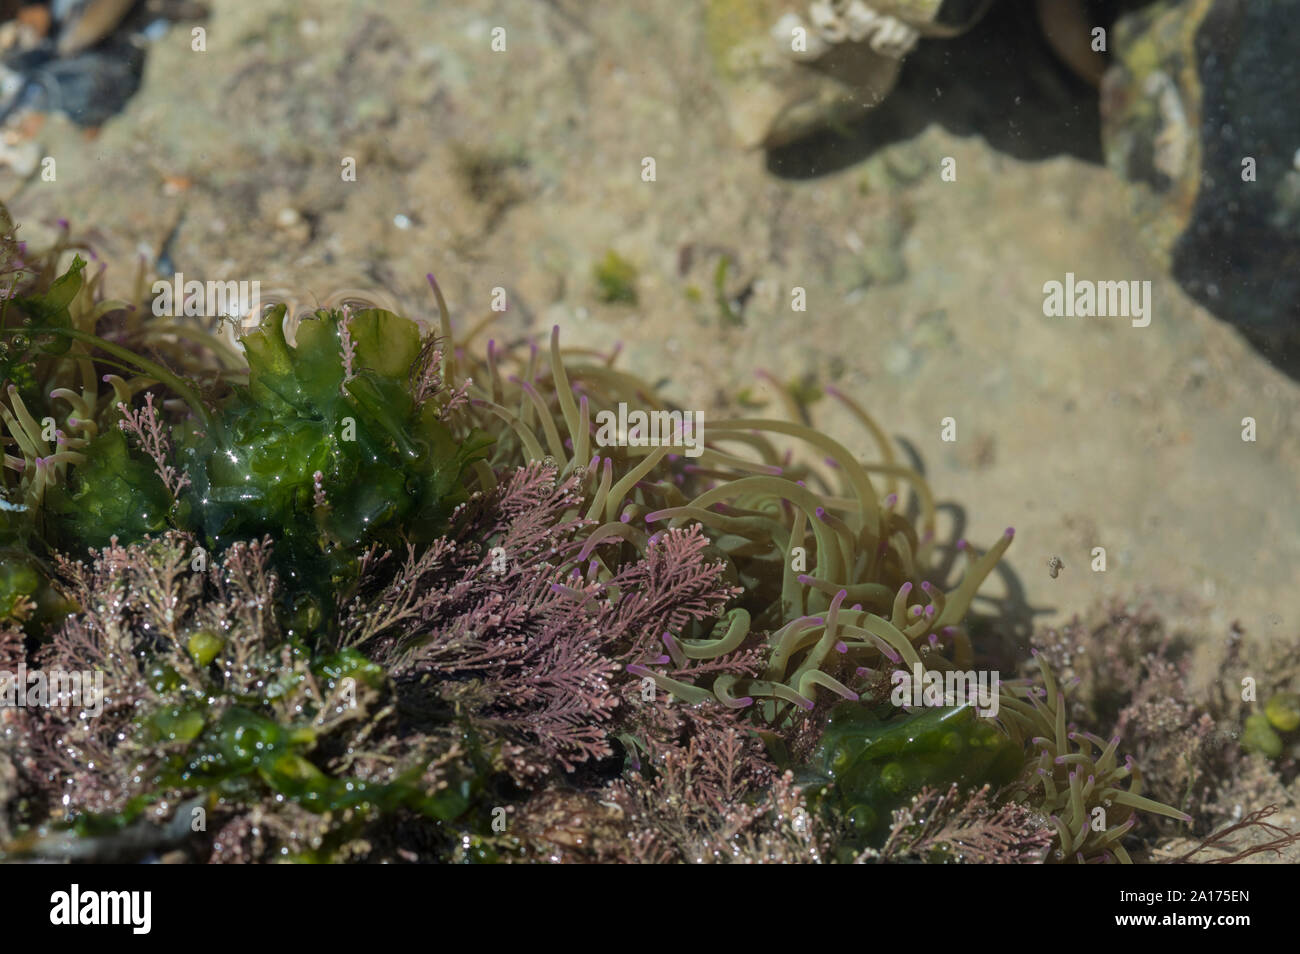 The seaweed Corallina officinalis and Snakelocks Anemone (Anemonia viridis) Stock Photo